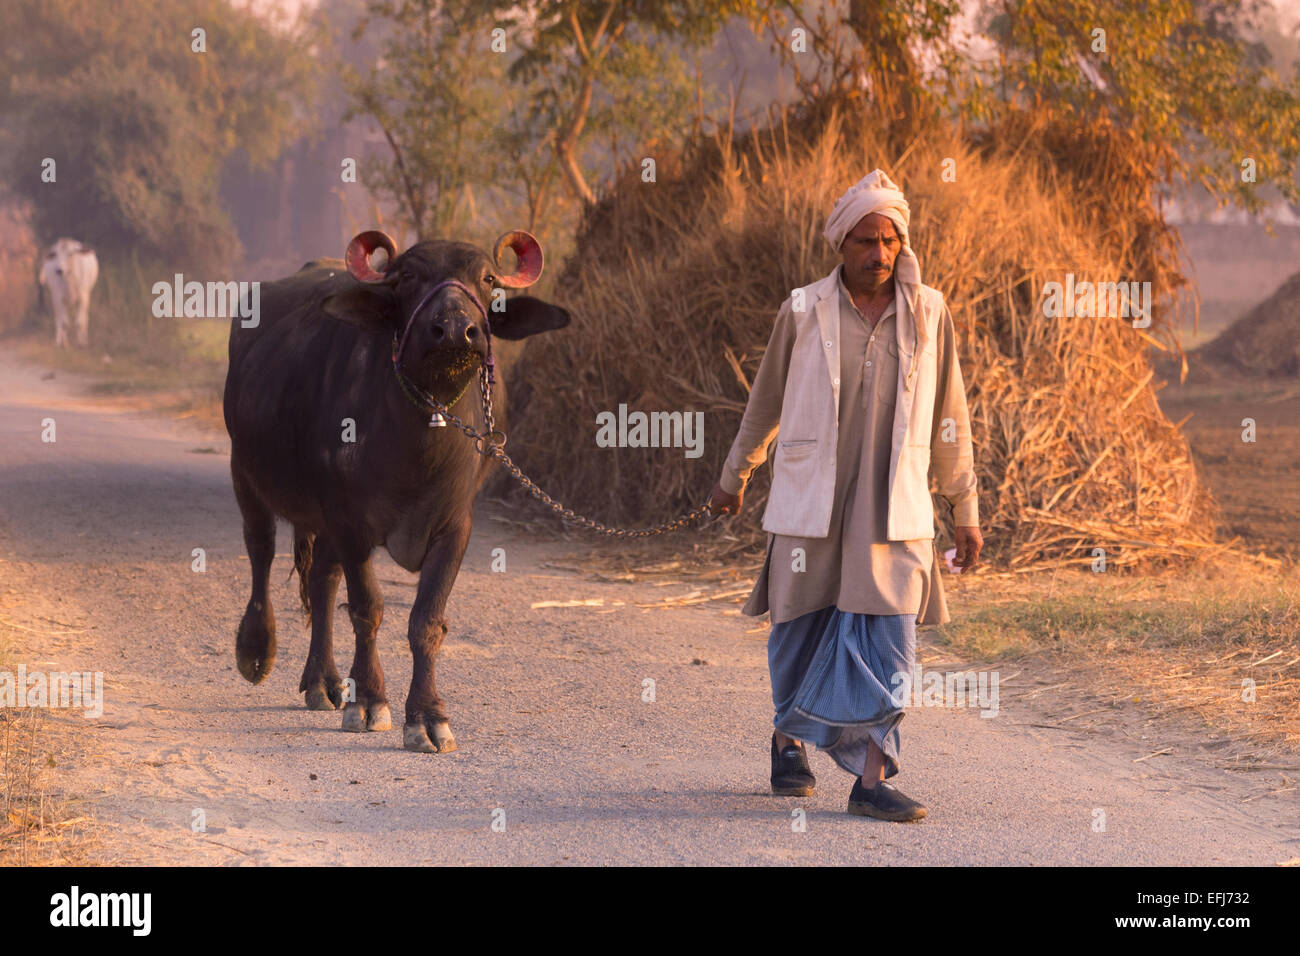 La India, Uttar Pradesh, Agra, el agricultor caminando un becerro para trabajar al amanecer. Foto de stock